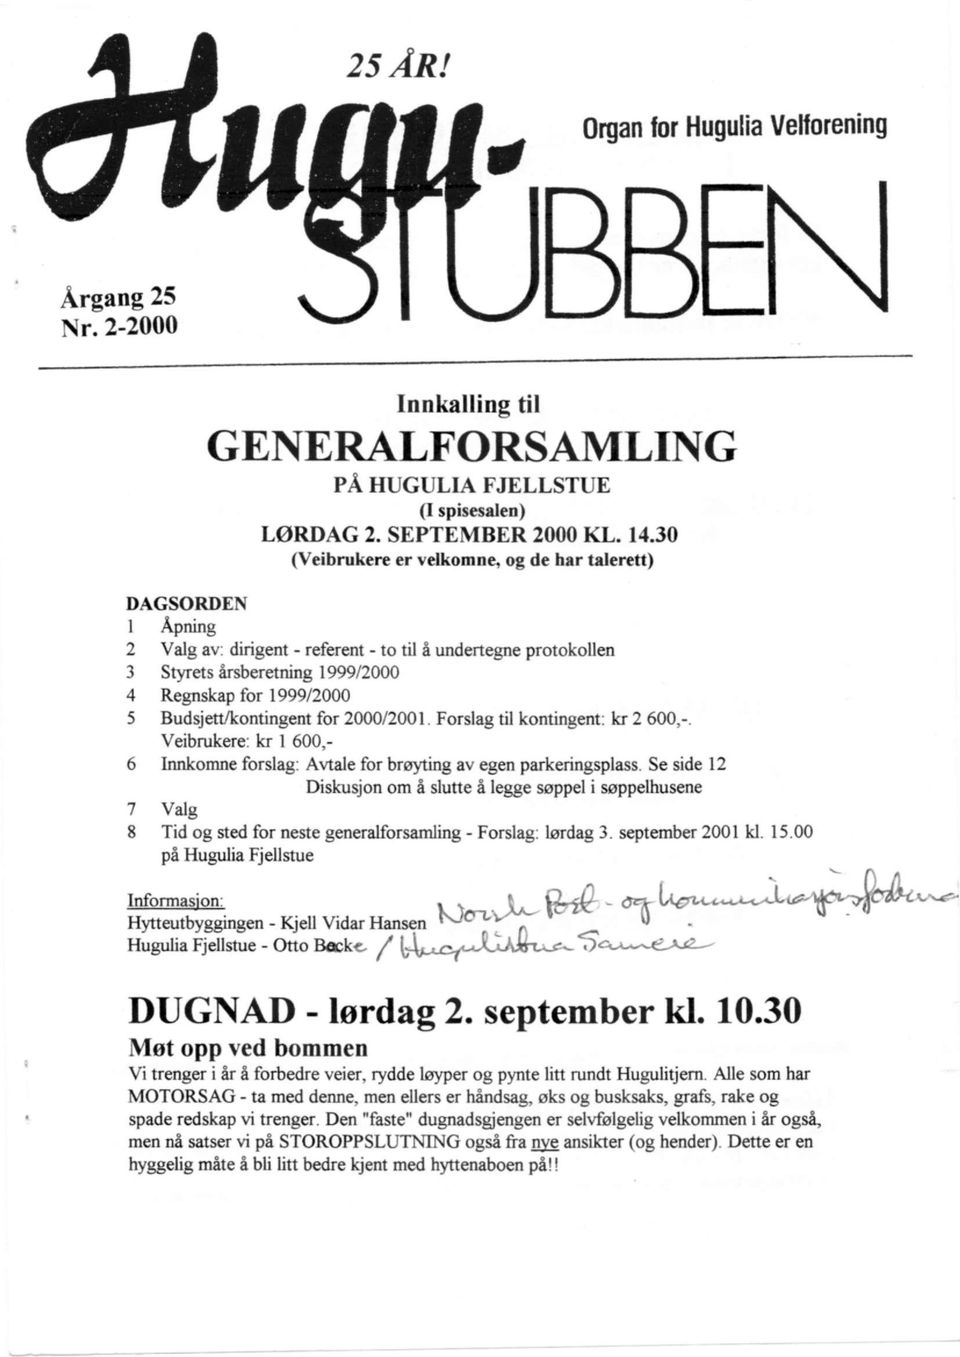 Budsjett/kontingent for 2000/2001 Forslag til kontingent: kr 2 600,-.